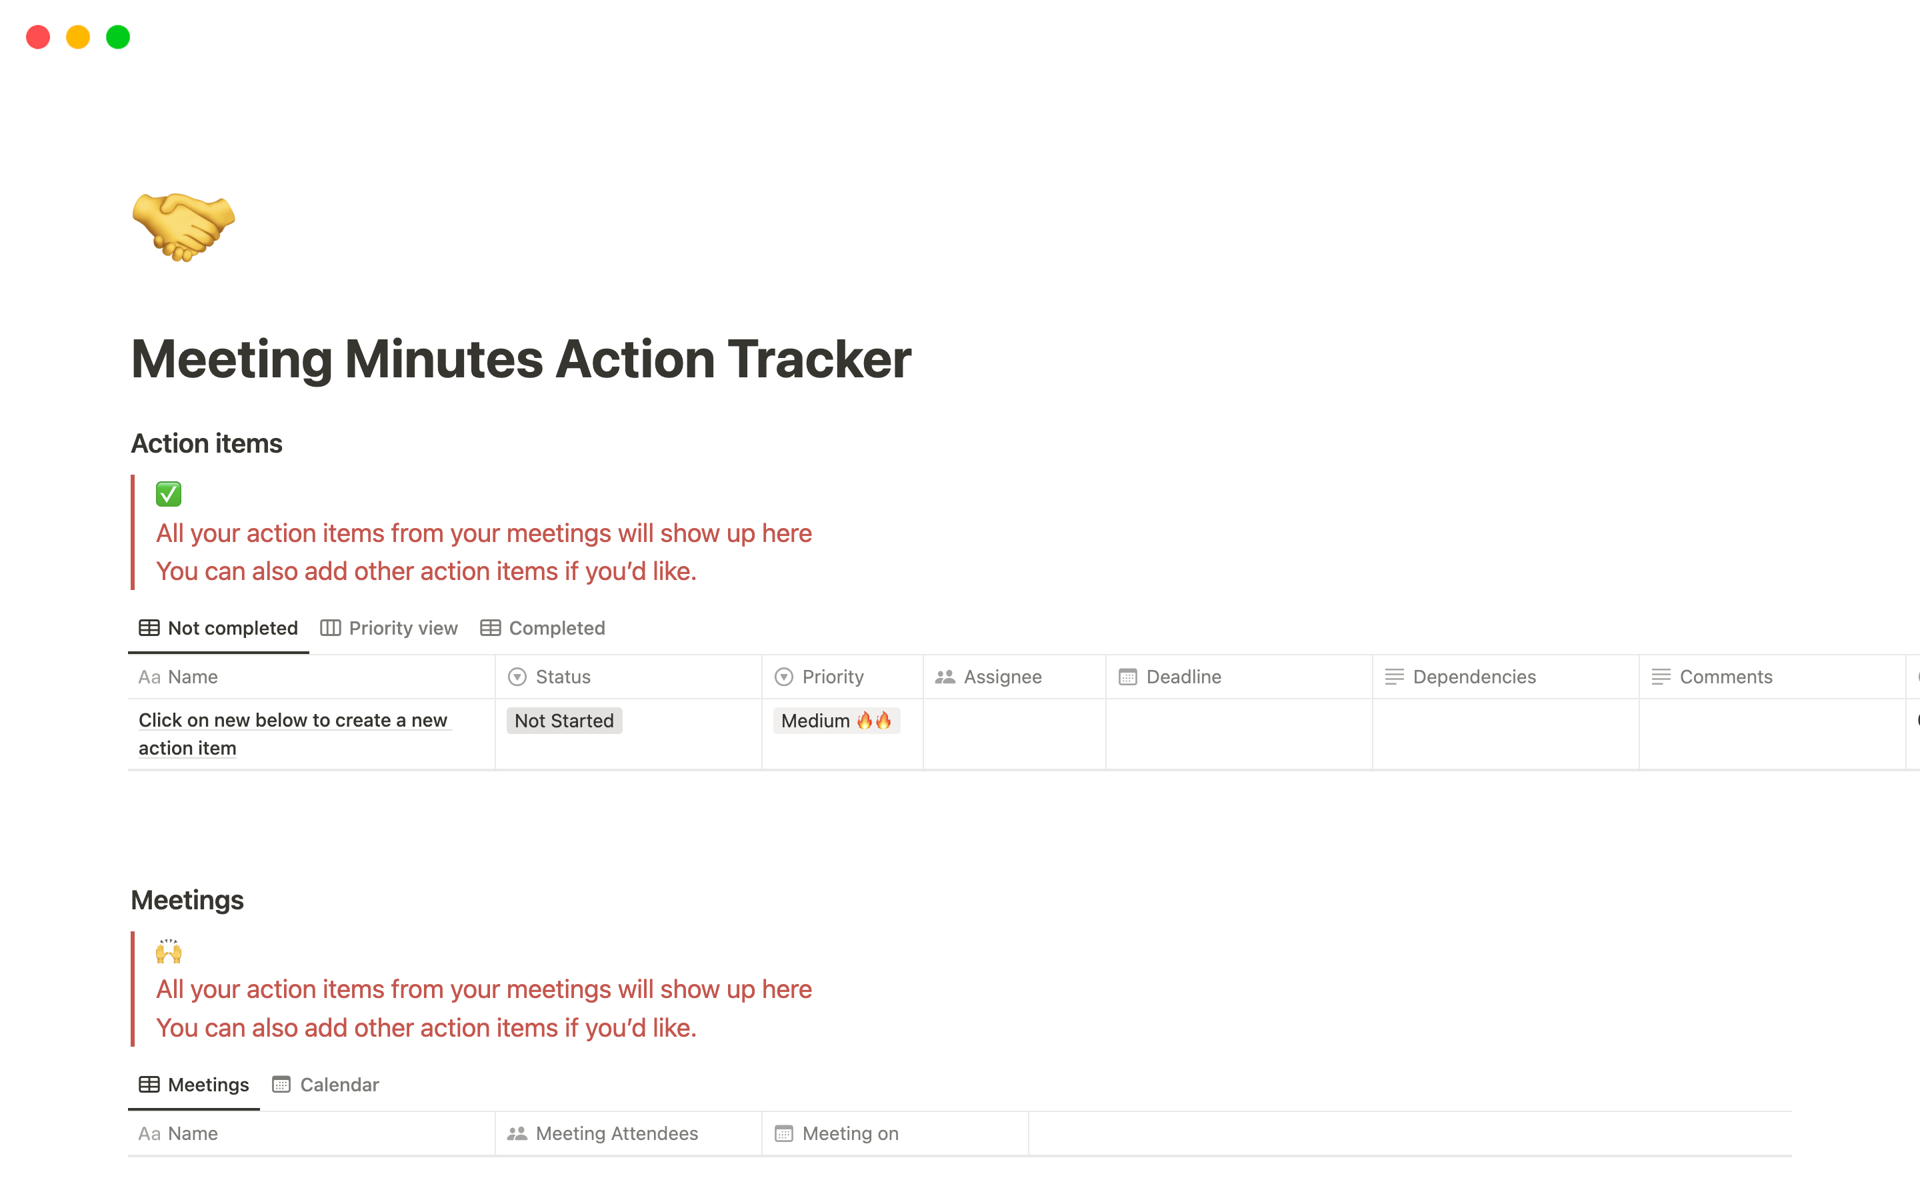 Uma prévia do modelo para Meeting Minutes Action Tracker